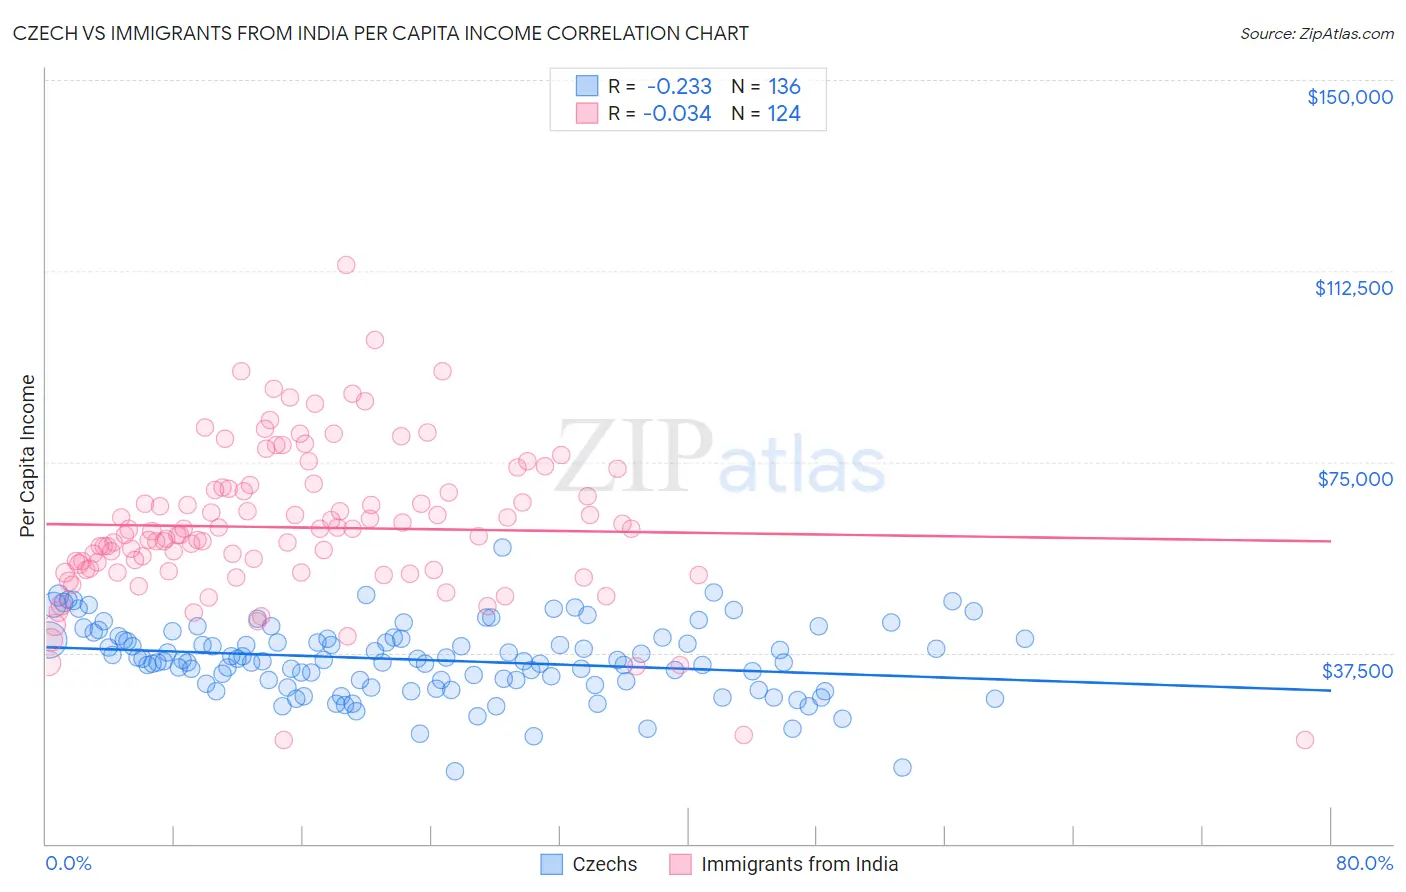 Czech vs Immigrants from India Per Capita Income